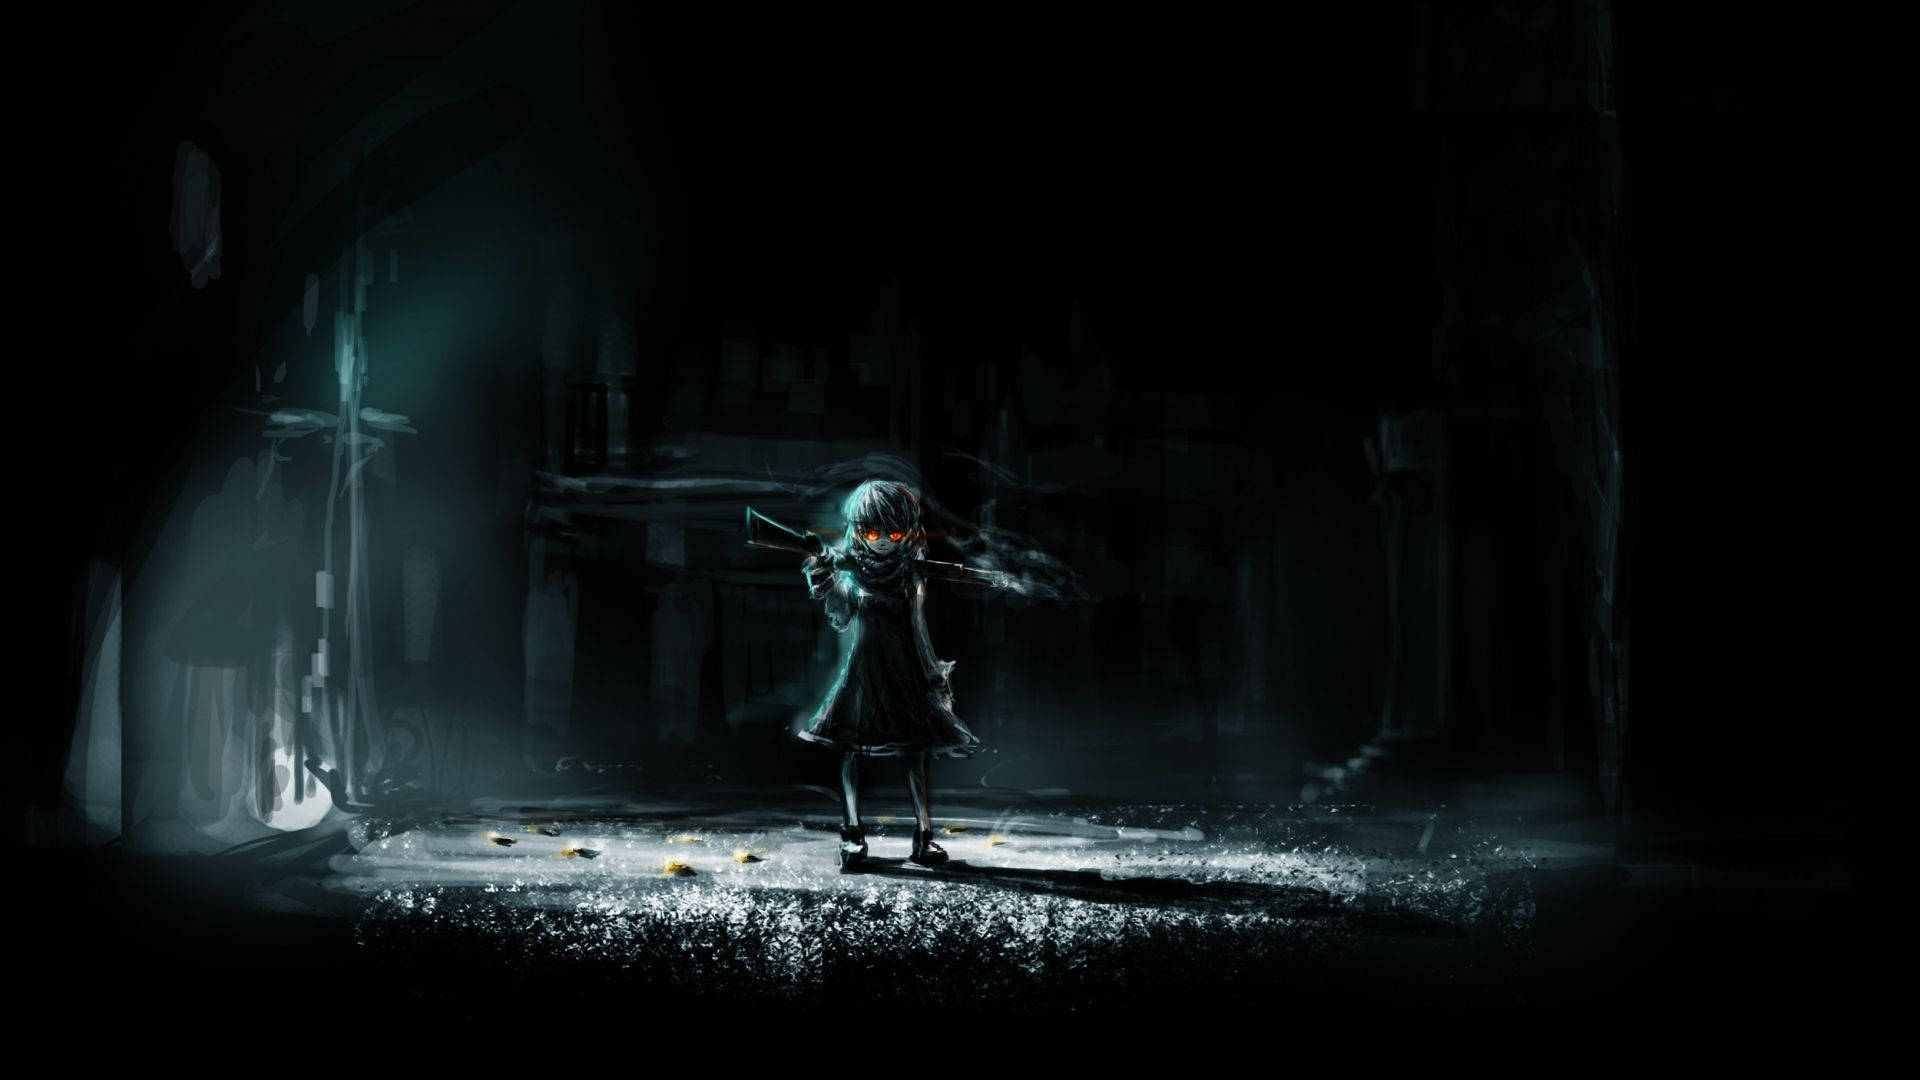 Hunter Girl Dark Aesthetic Background